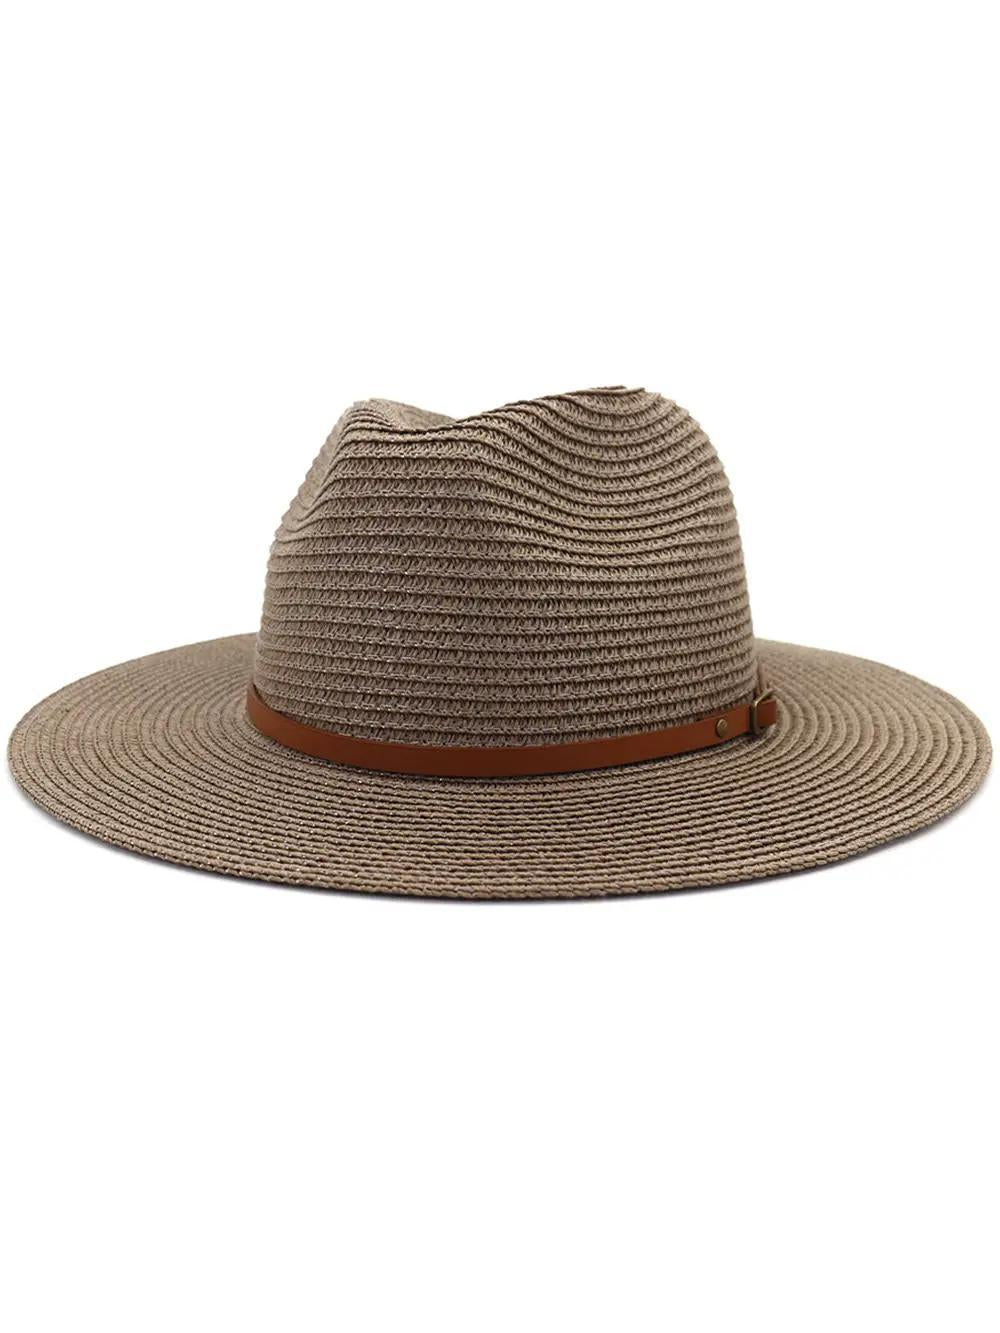 Seaside Straw Hat